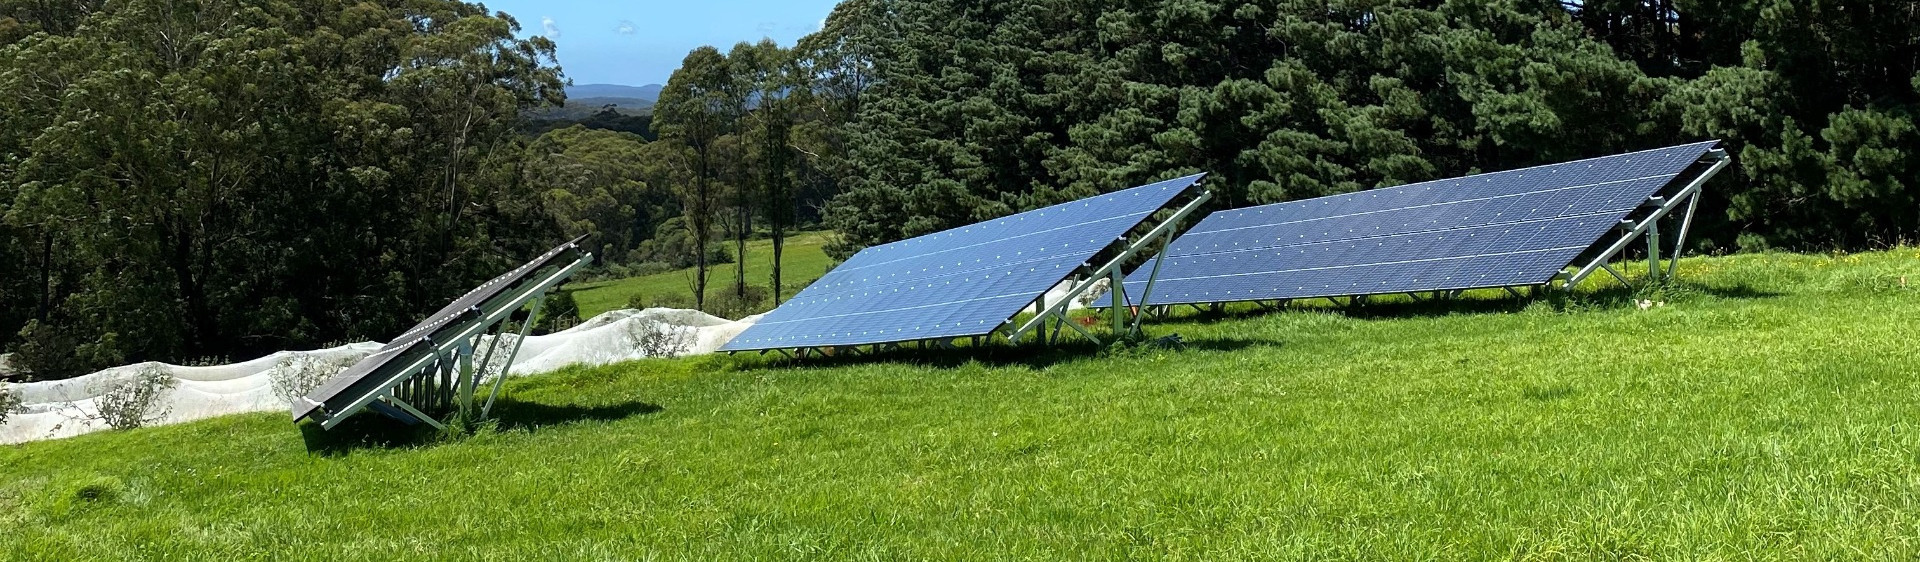 Solar Farm in field